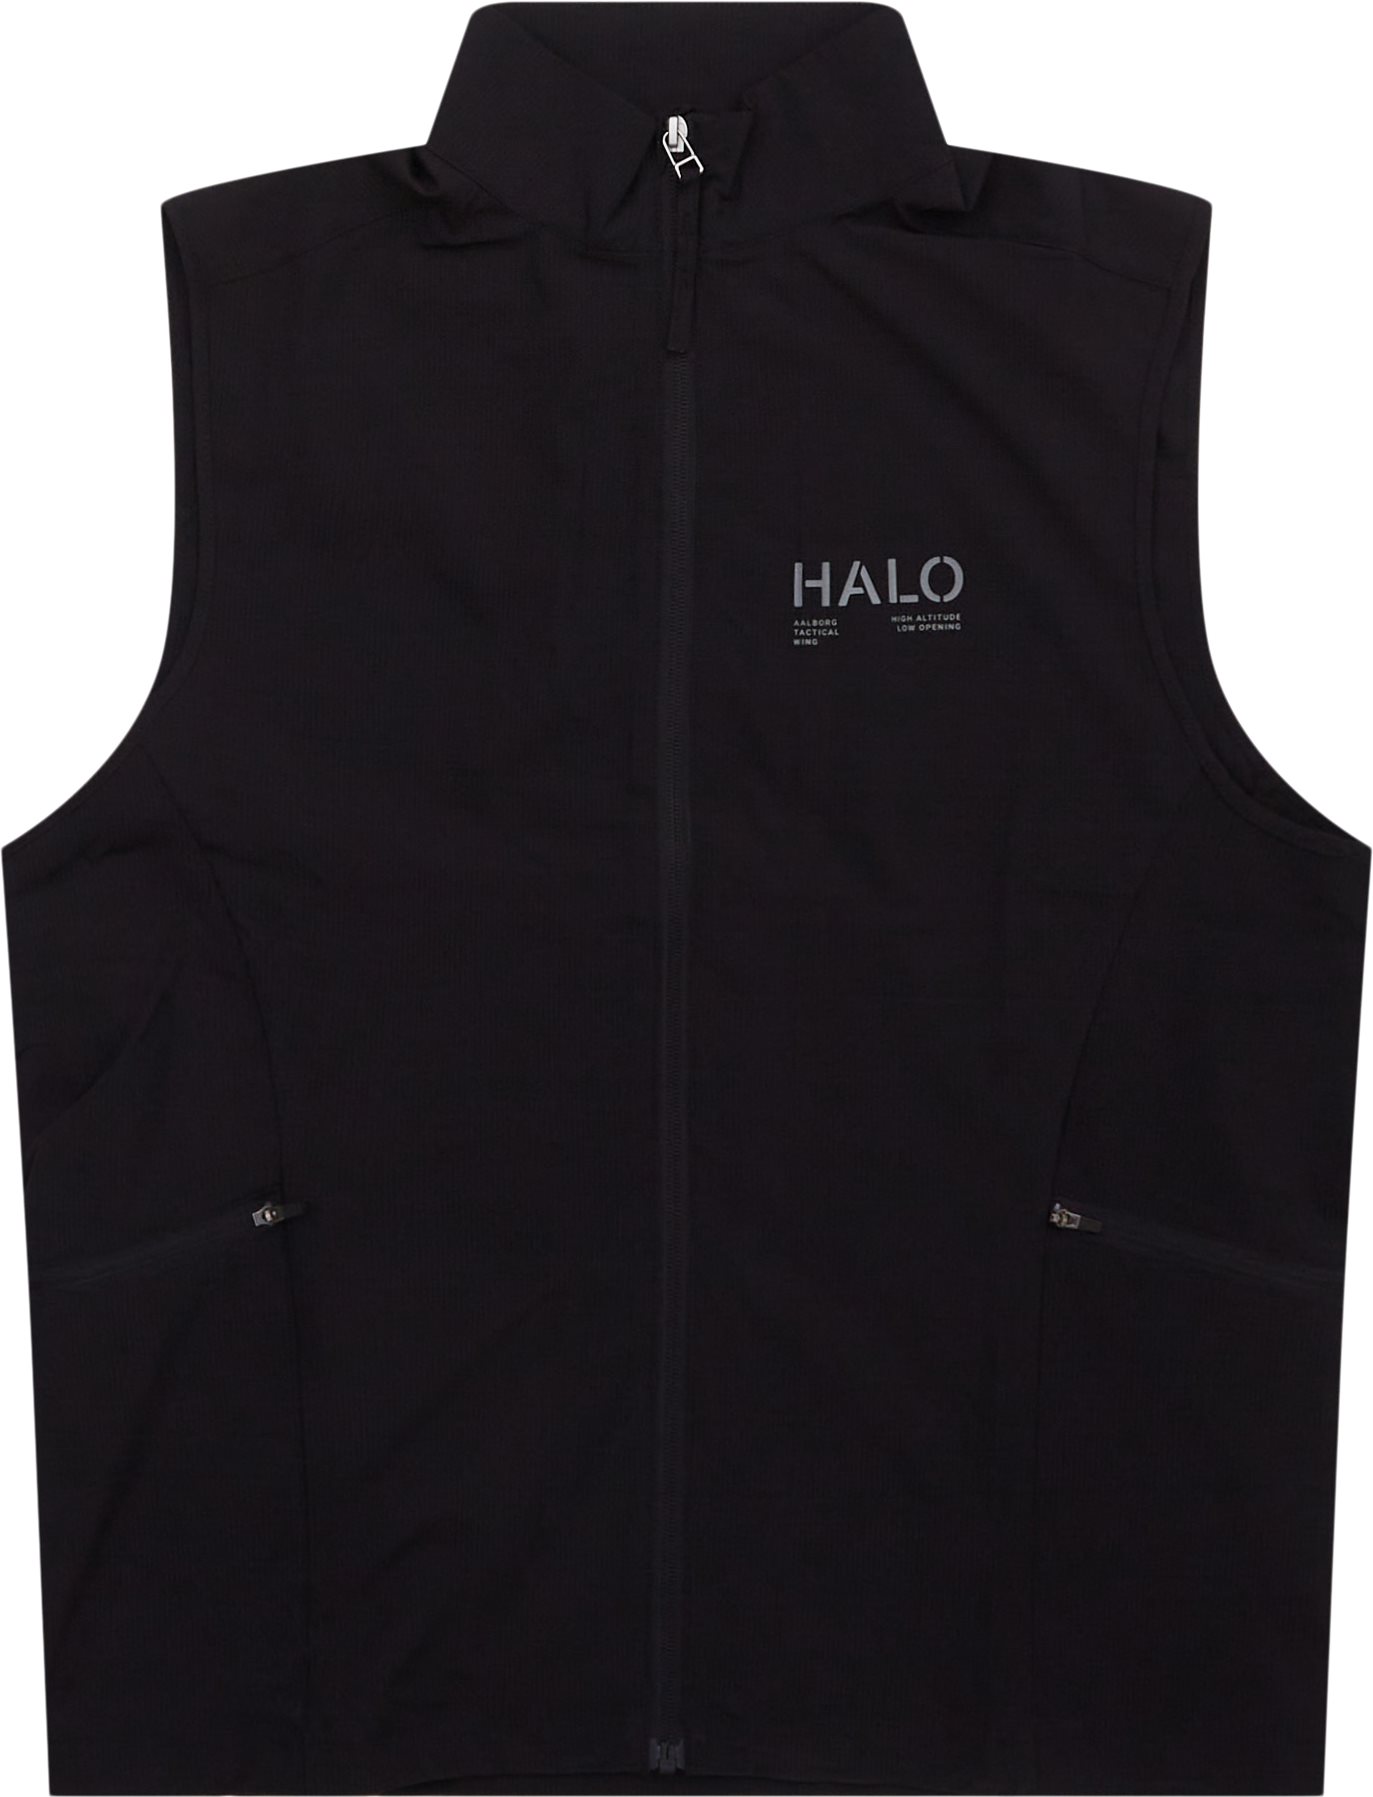 HALO Vests TECH VEST 610325 Black